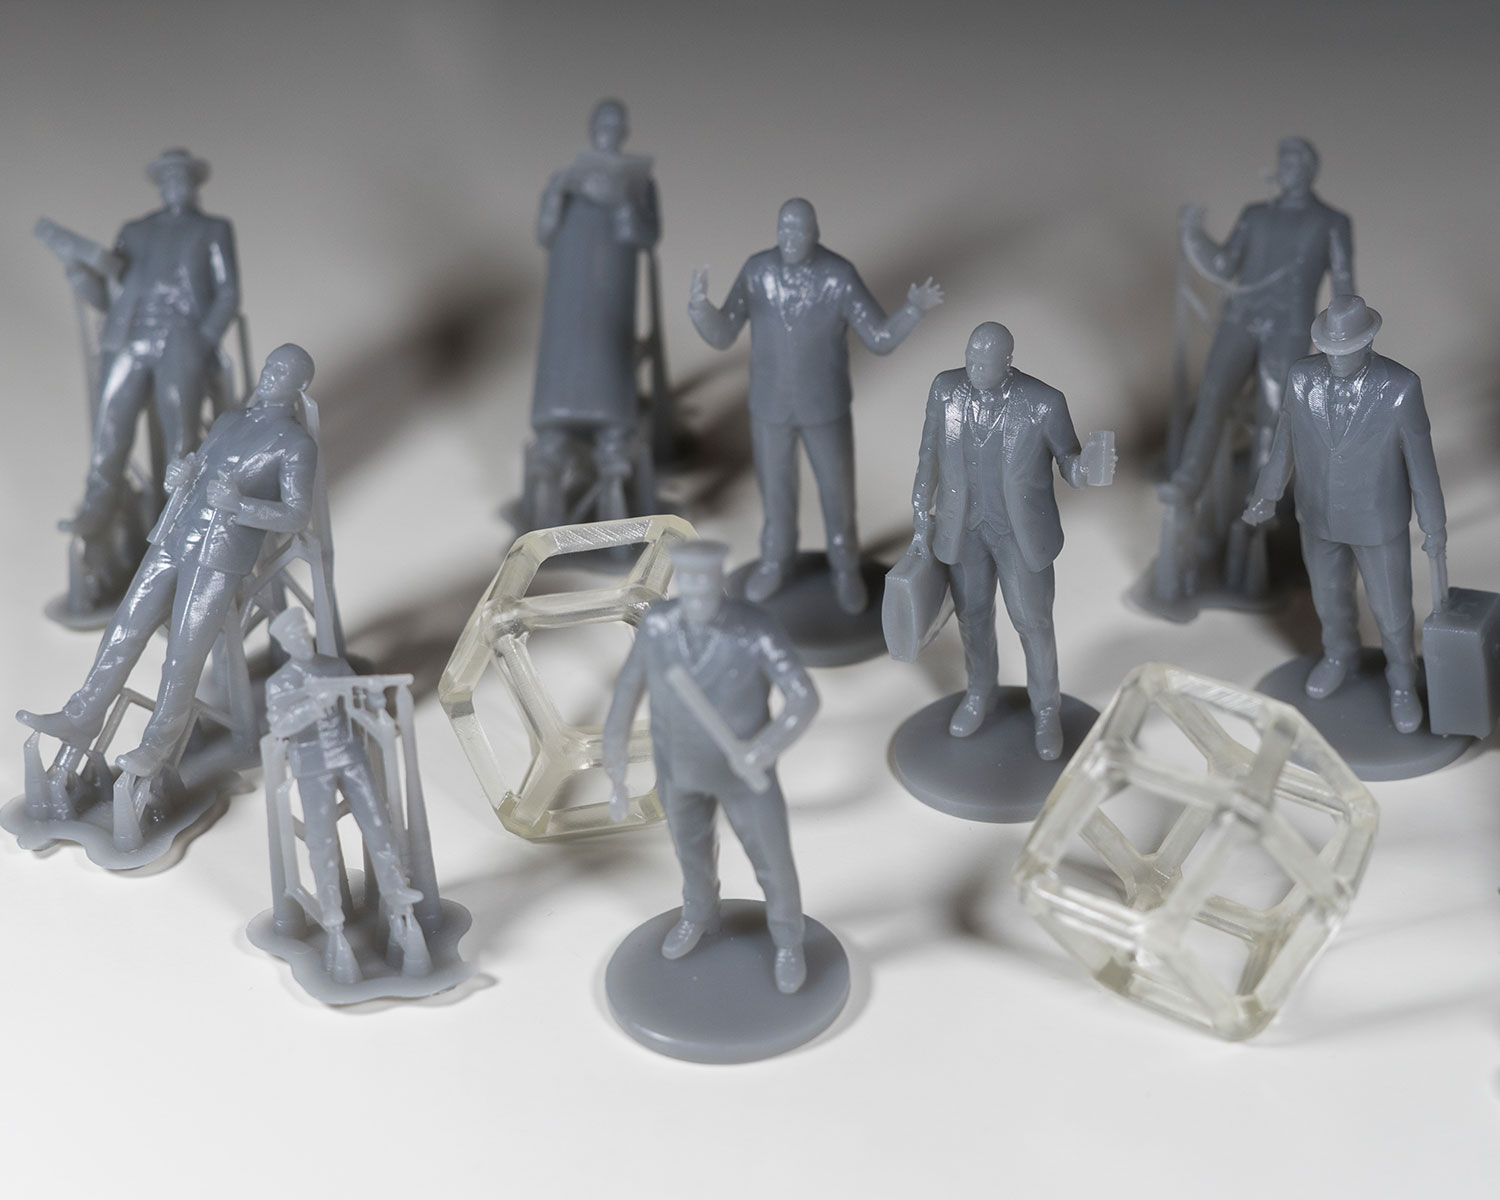 3D printed figurines